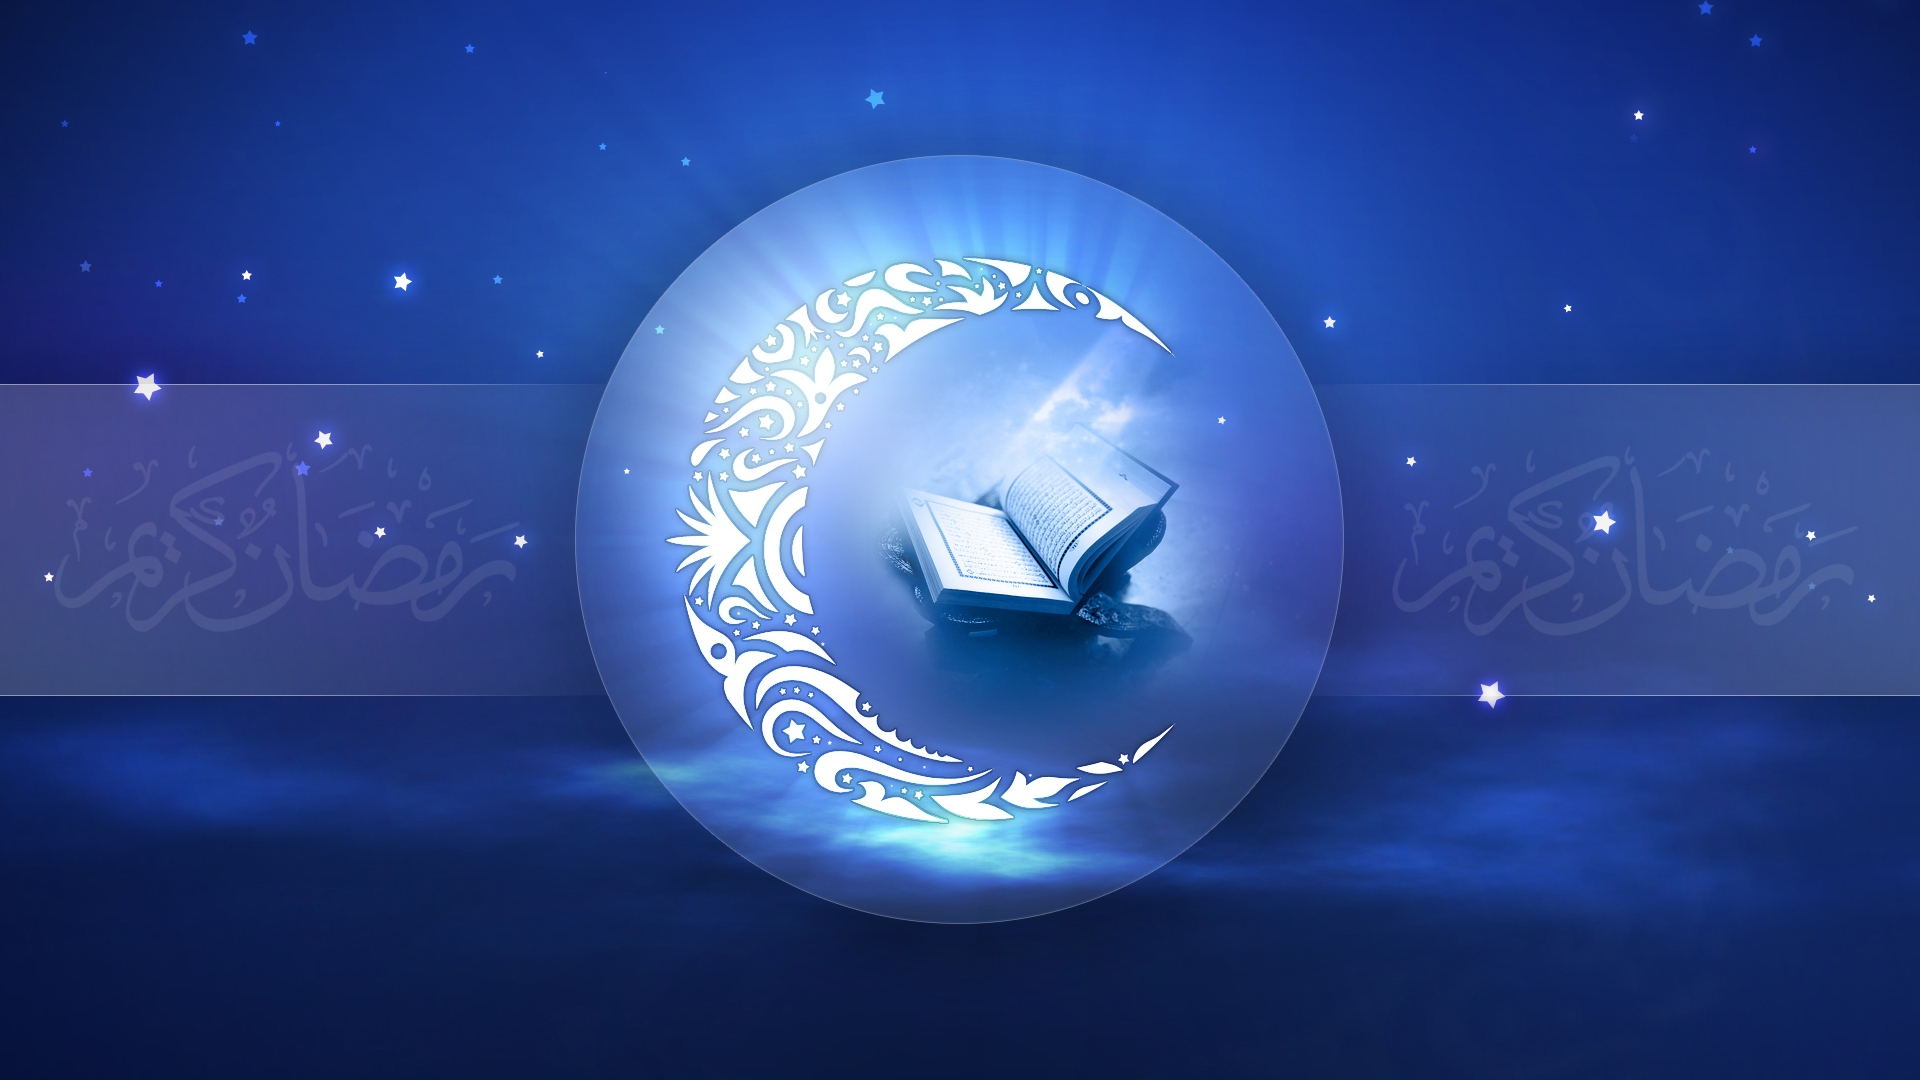 Quran Wallpaper Hd 1080p - Al Quran Background Biru , HD Wallpaper & Backgrounds